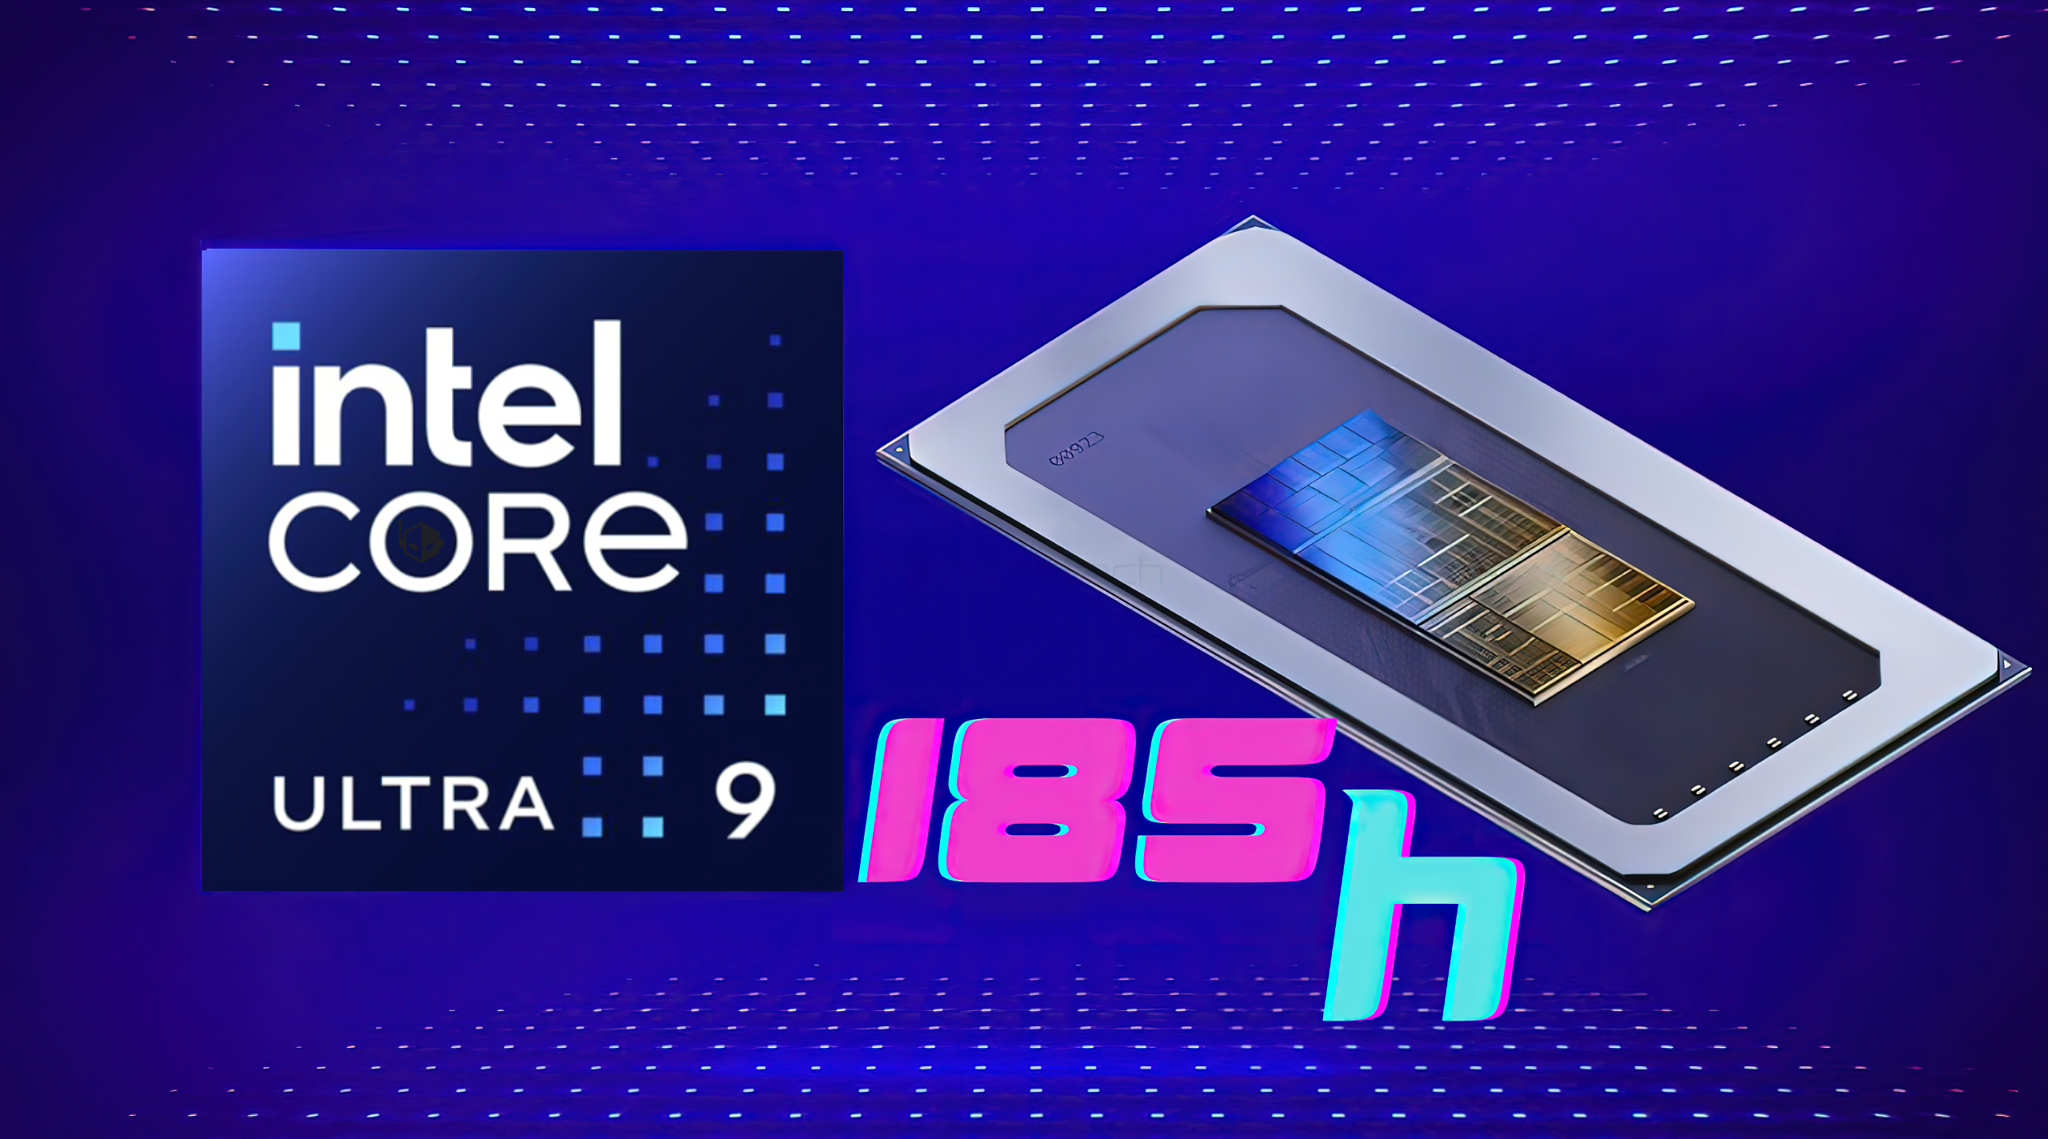 Rò rỉ hiệu năng CPU Intel “Meteor Lake” Core Ultra 9 185H với xung nhịp lên tới 5,1 GHz